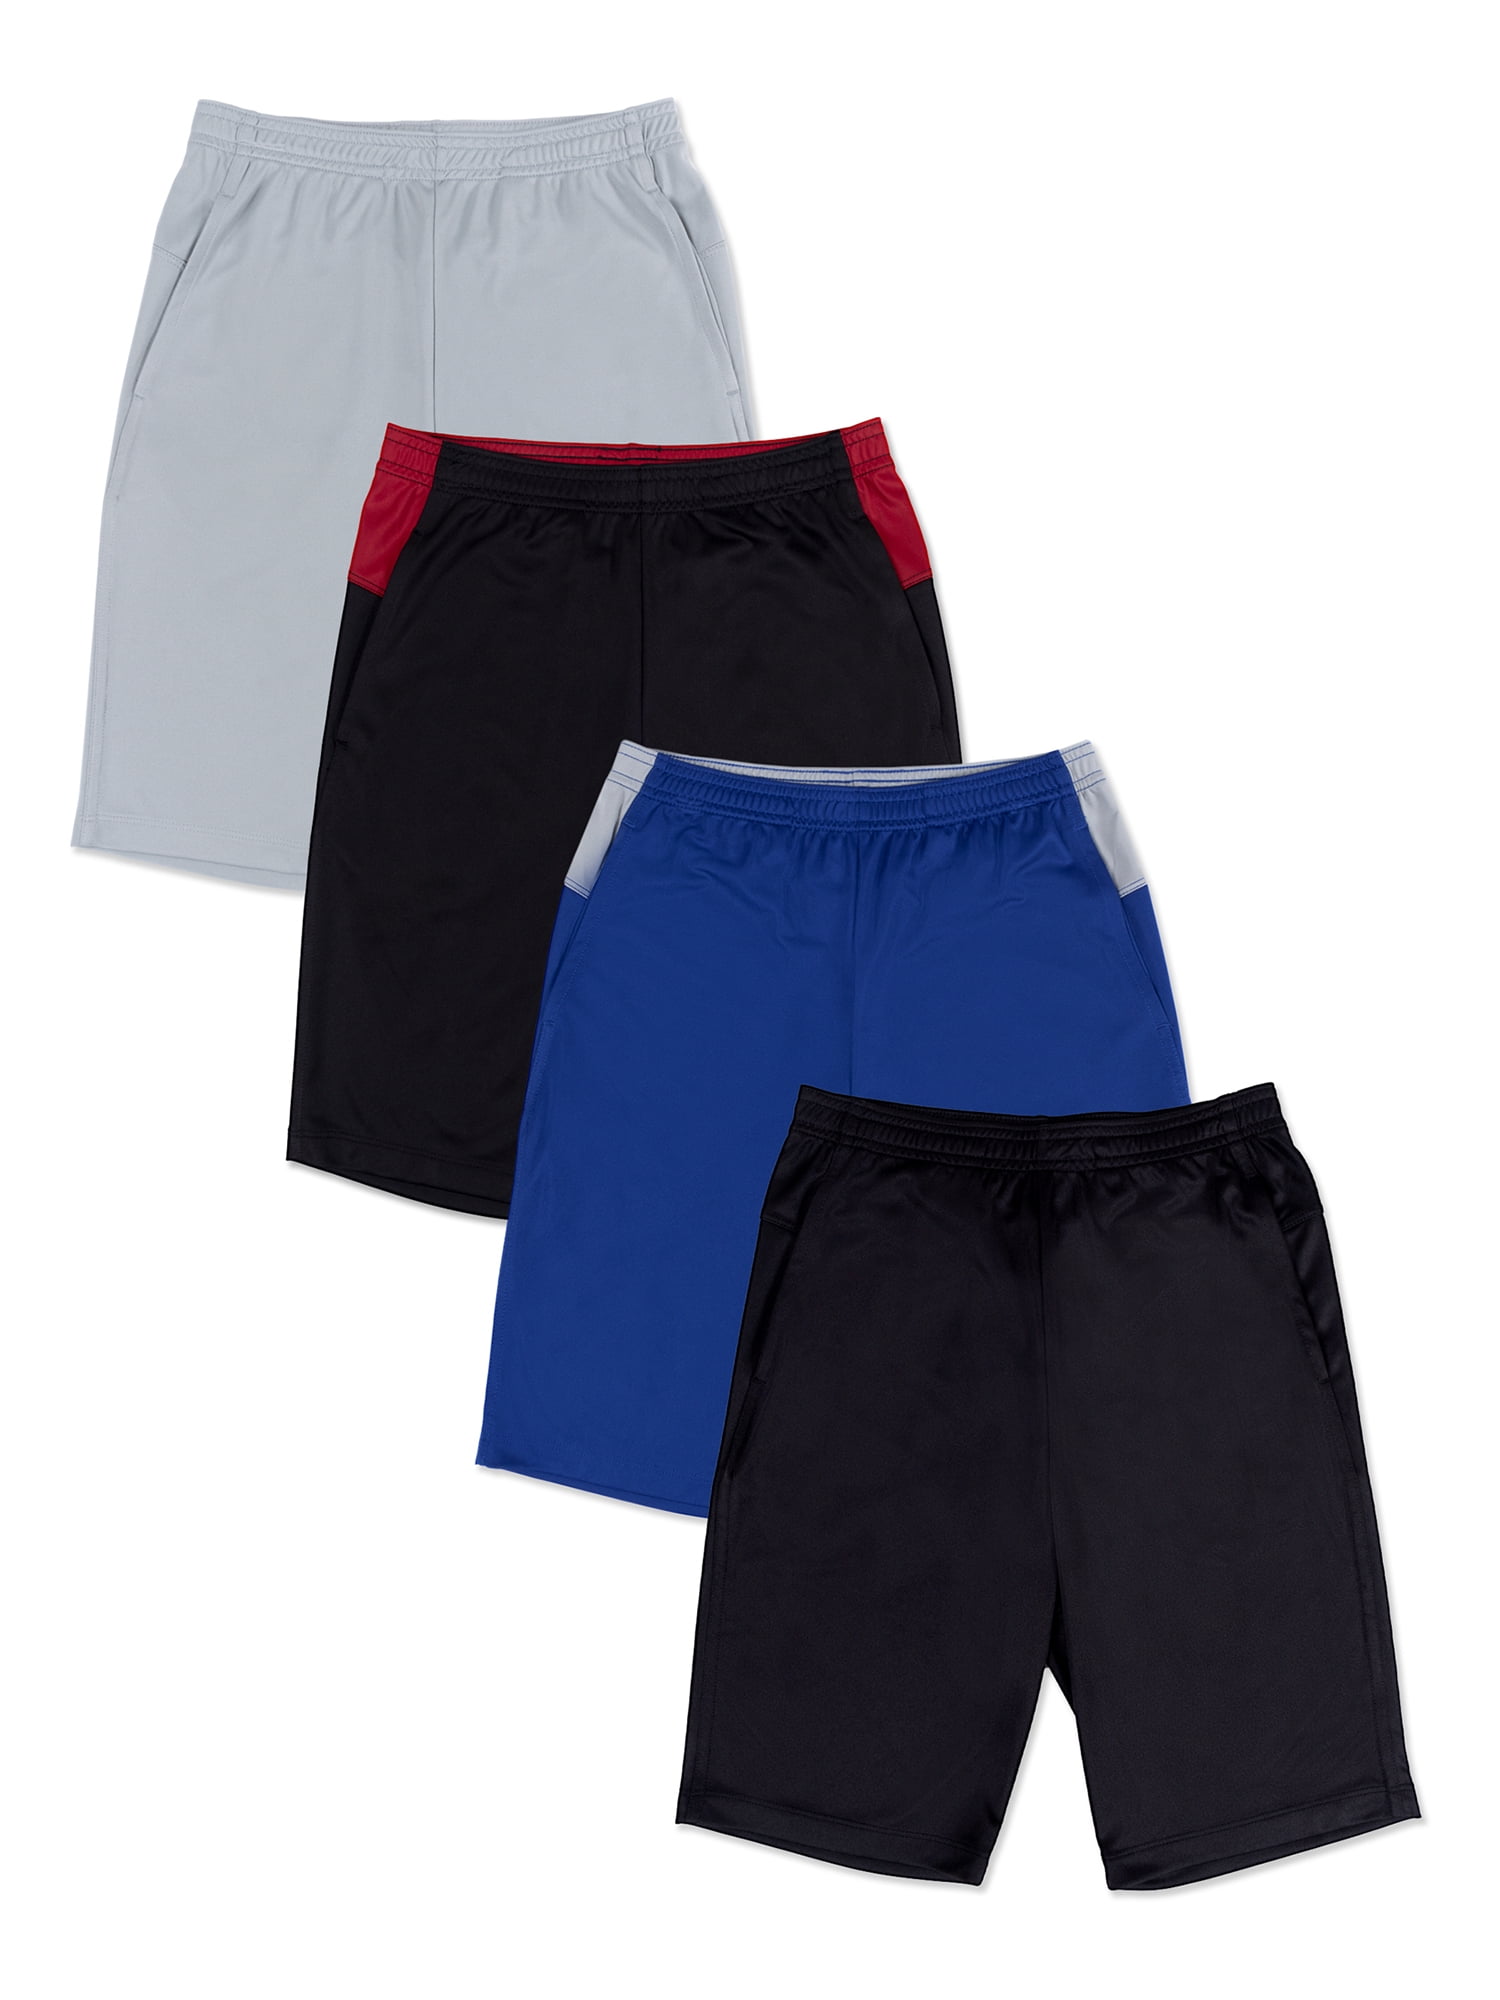 Athletic Works Boys Active Shorts, 4-Pack Bundle, Sizes 4-18 & Husky ...